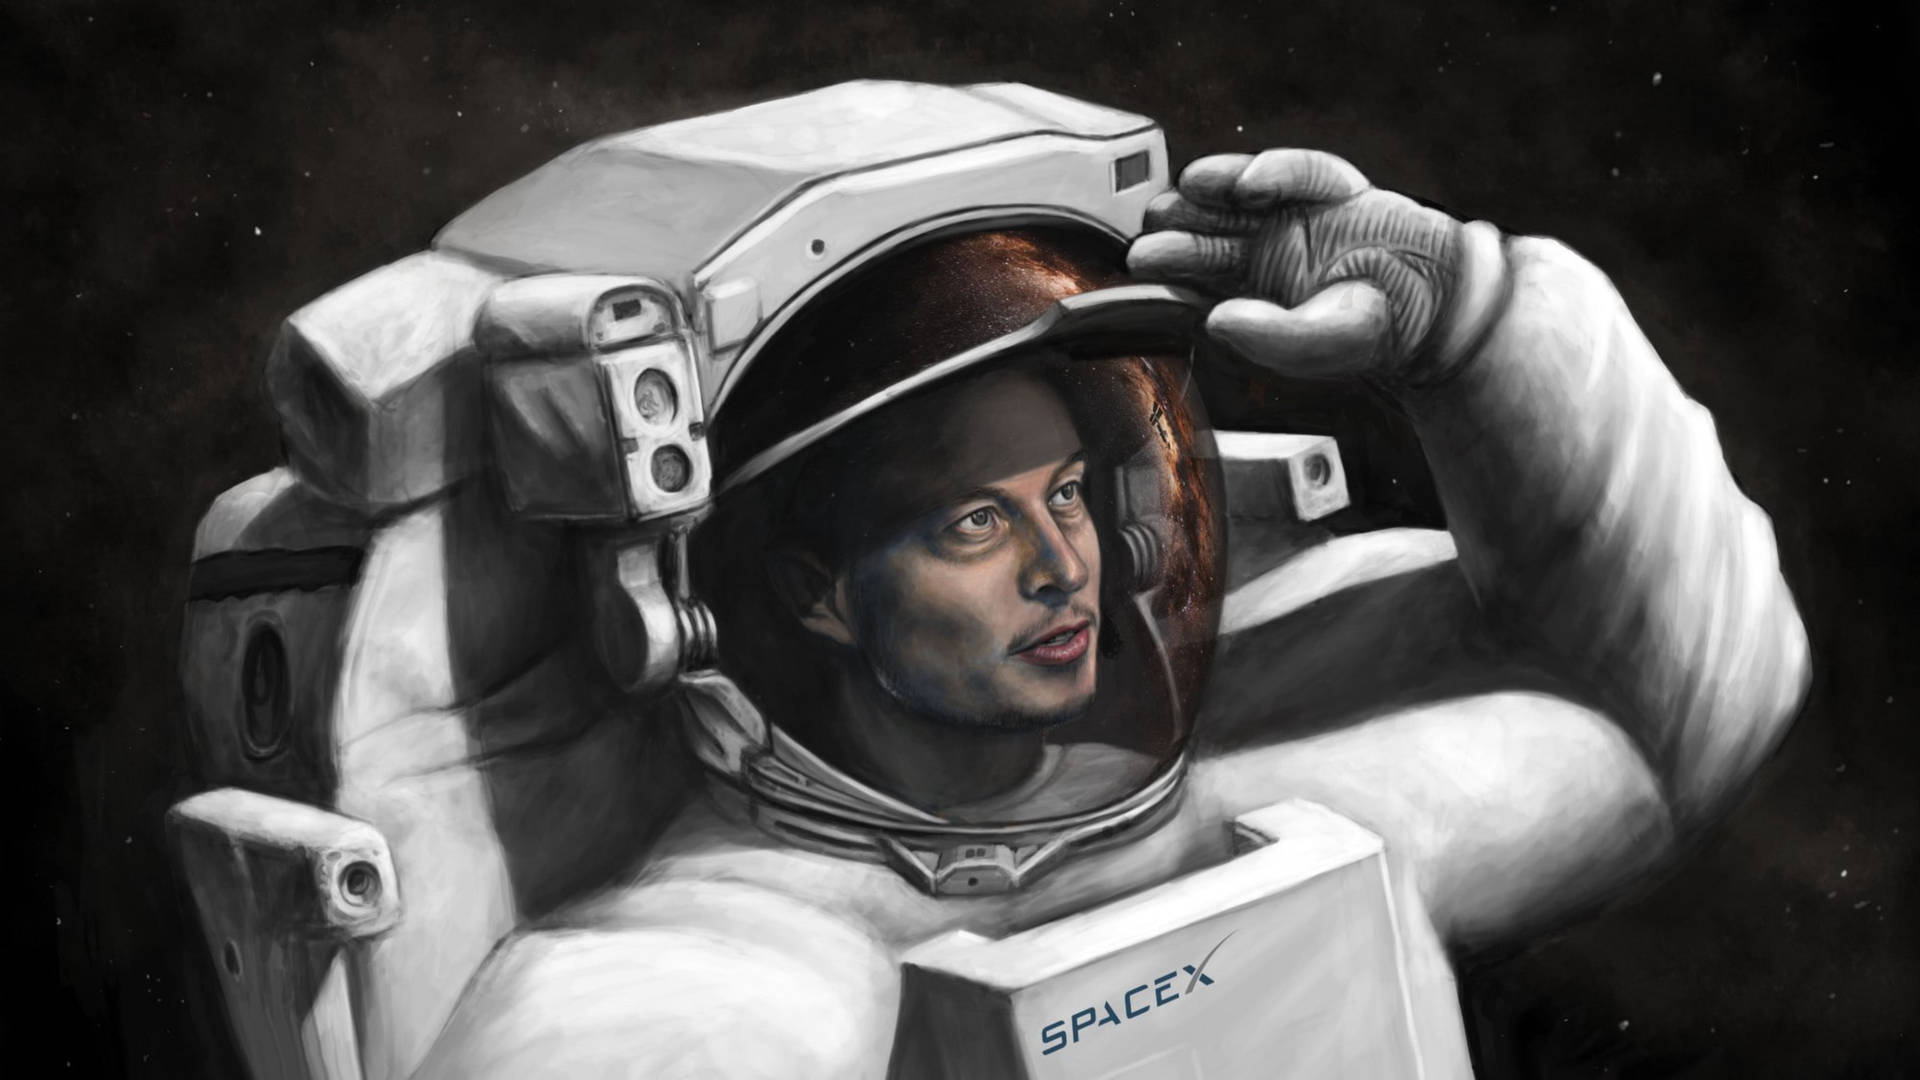 Elon Musk SpaceX Astronaut Art Wallpaper